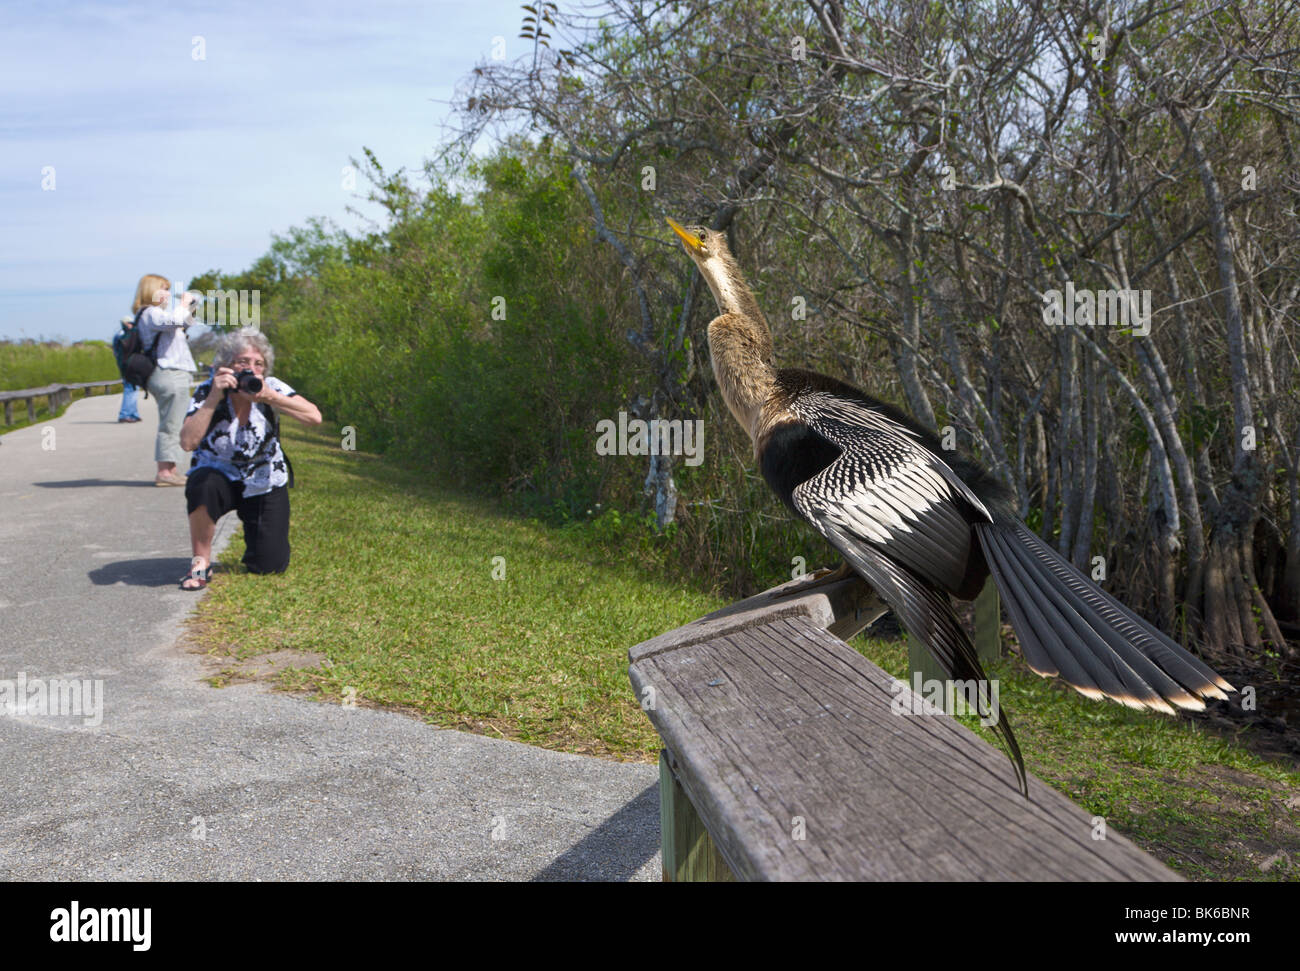 Woman taking picture of an Anhinga, 'Anhinga Trail', Everglades, Florida, USA MR Stock Photo